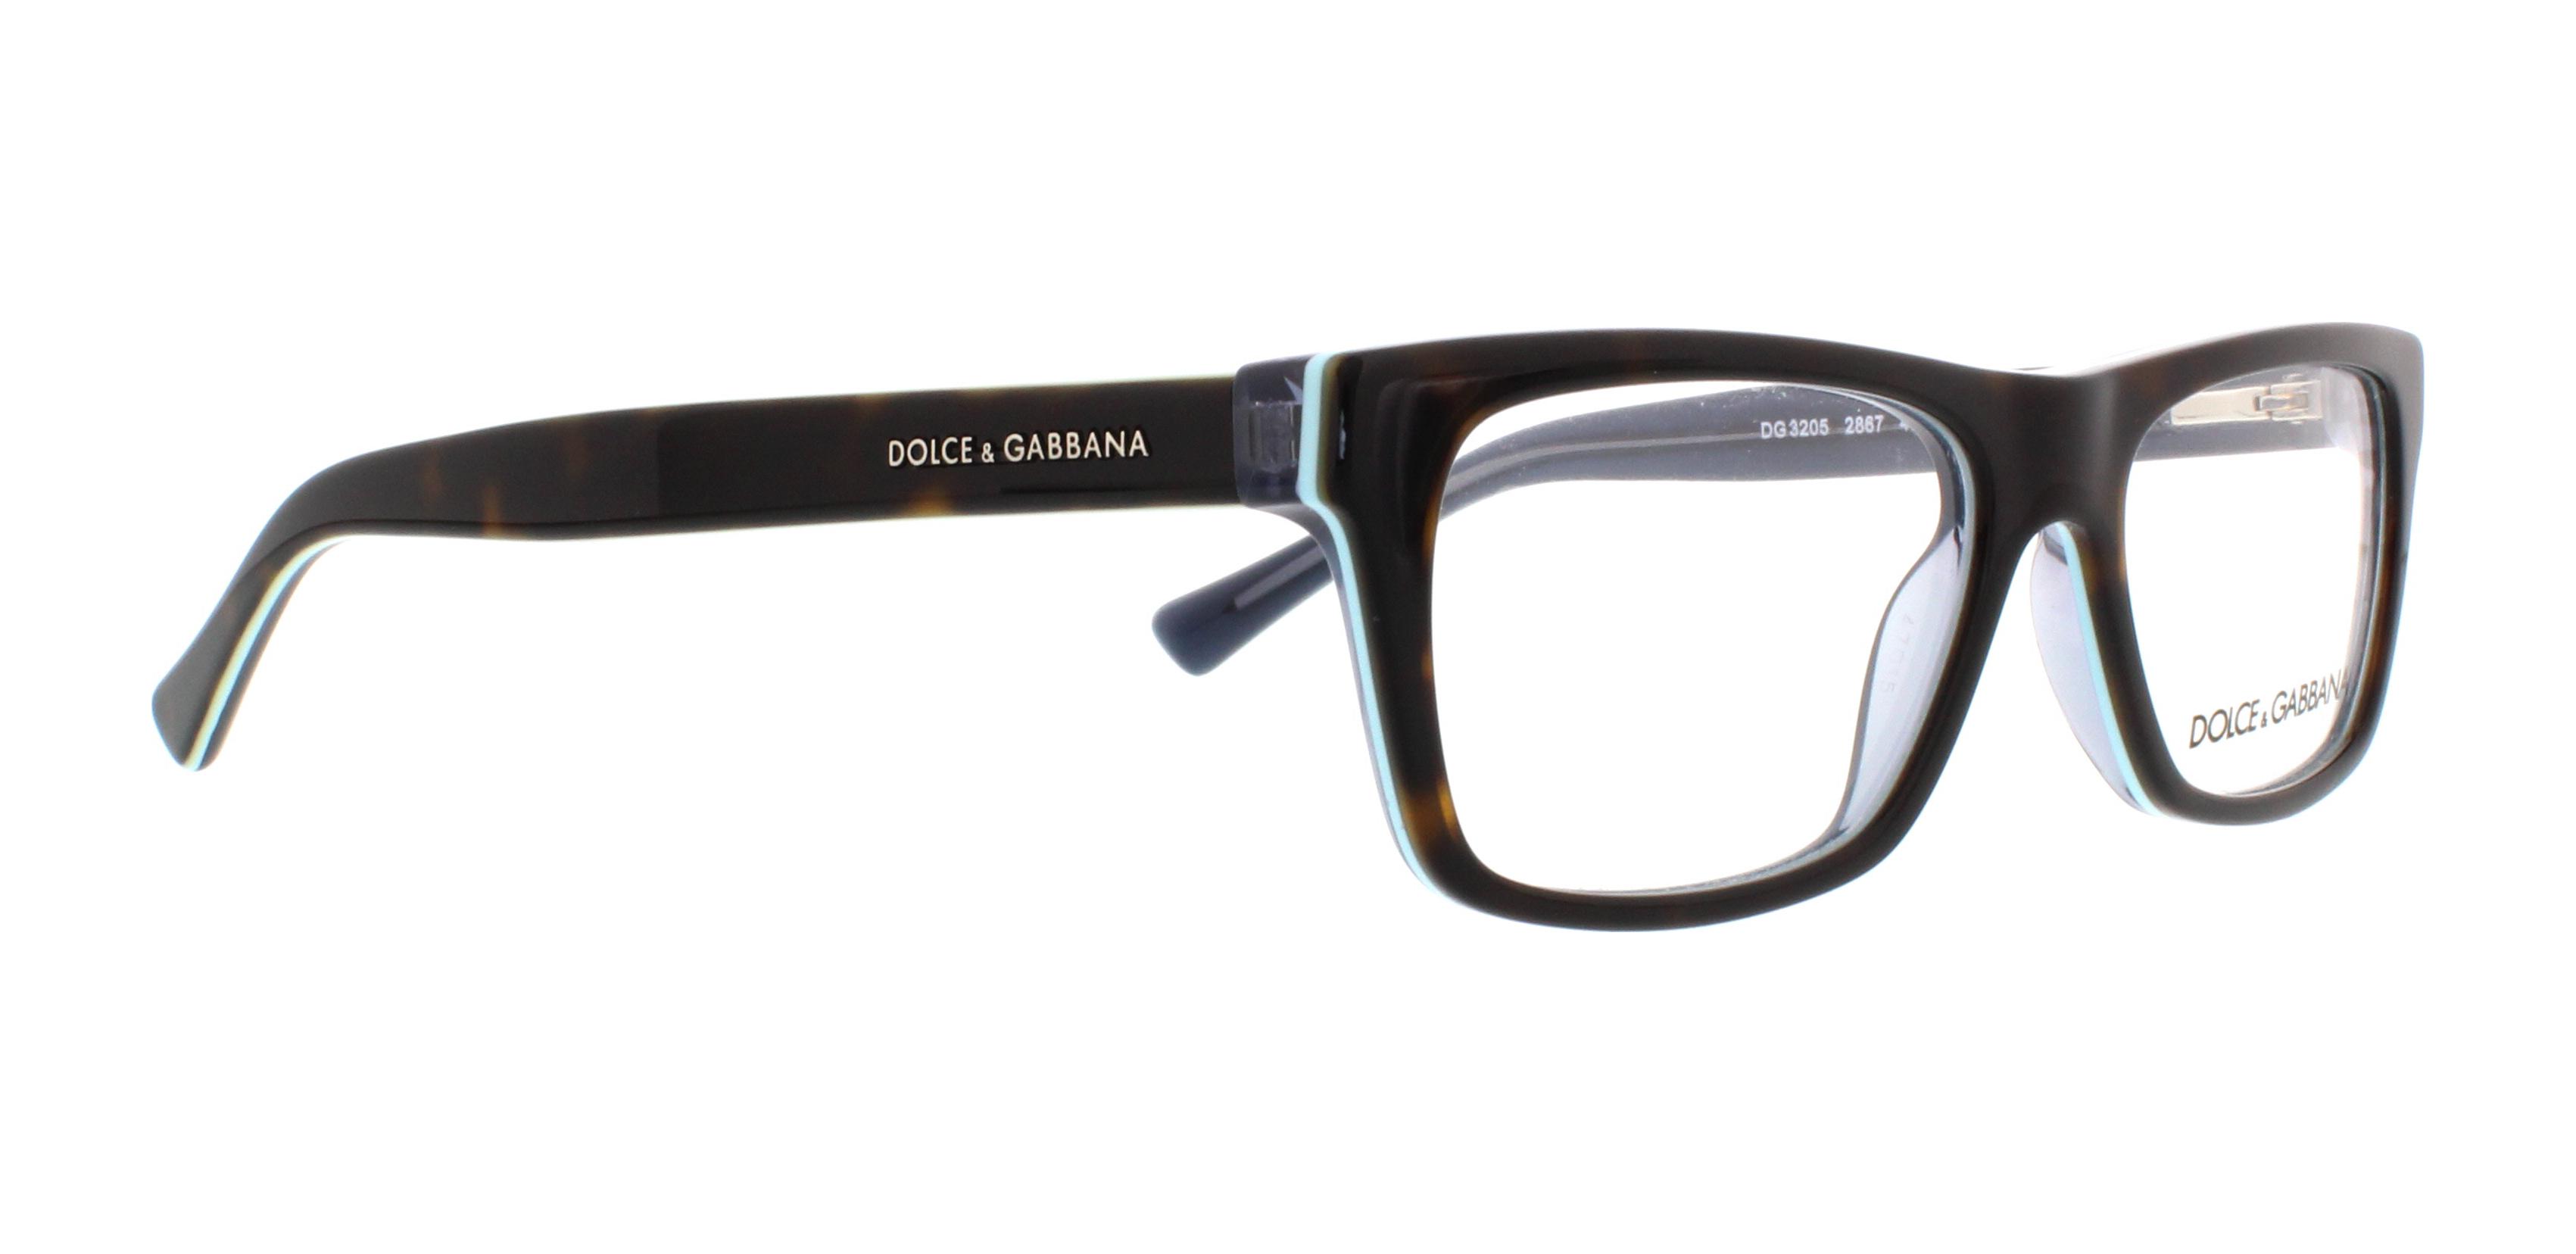 Designer Frames Outlet. Dolce & Gabbana Eyeglasses DG3205